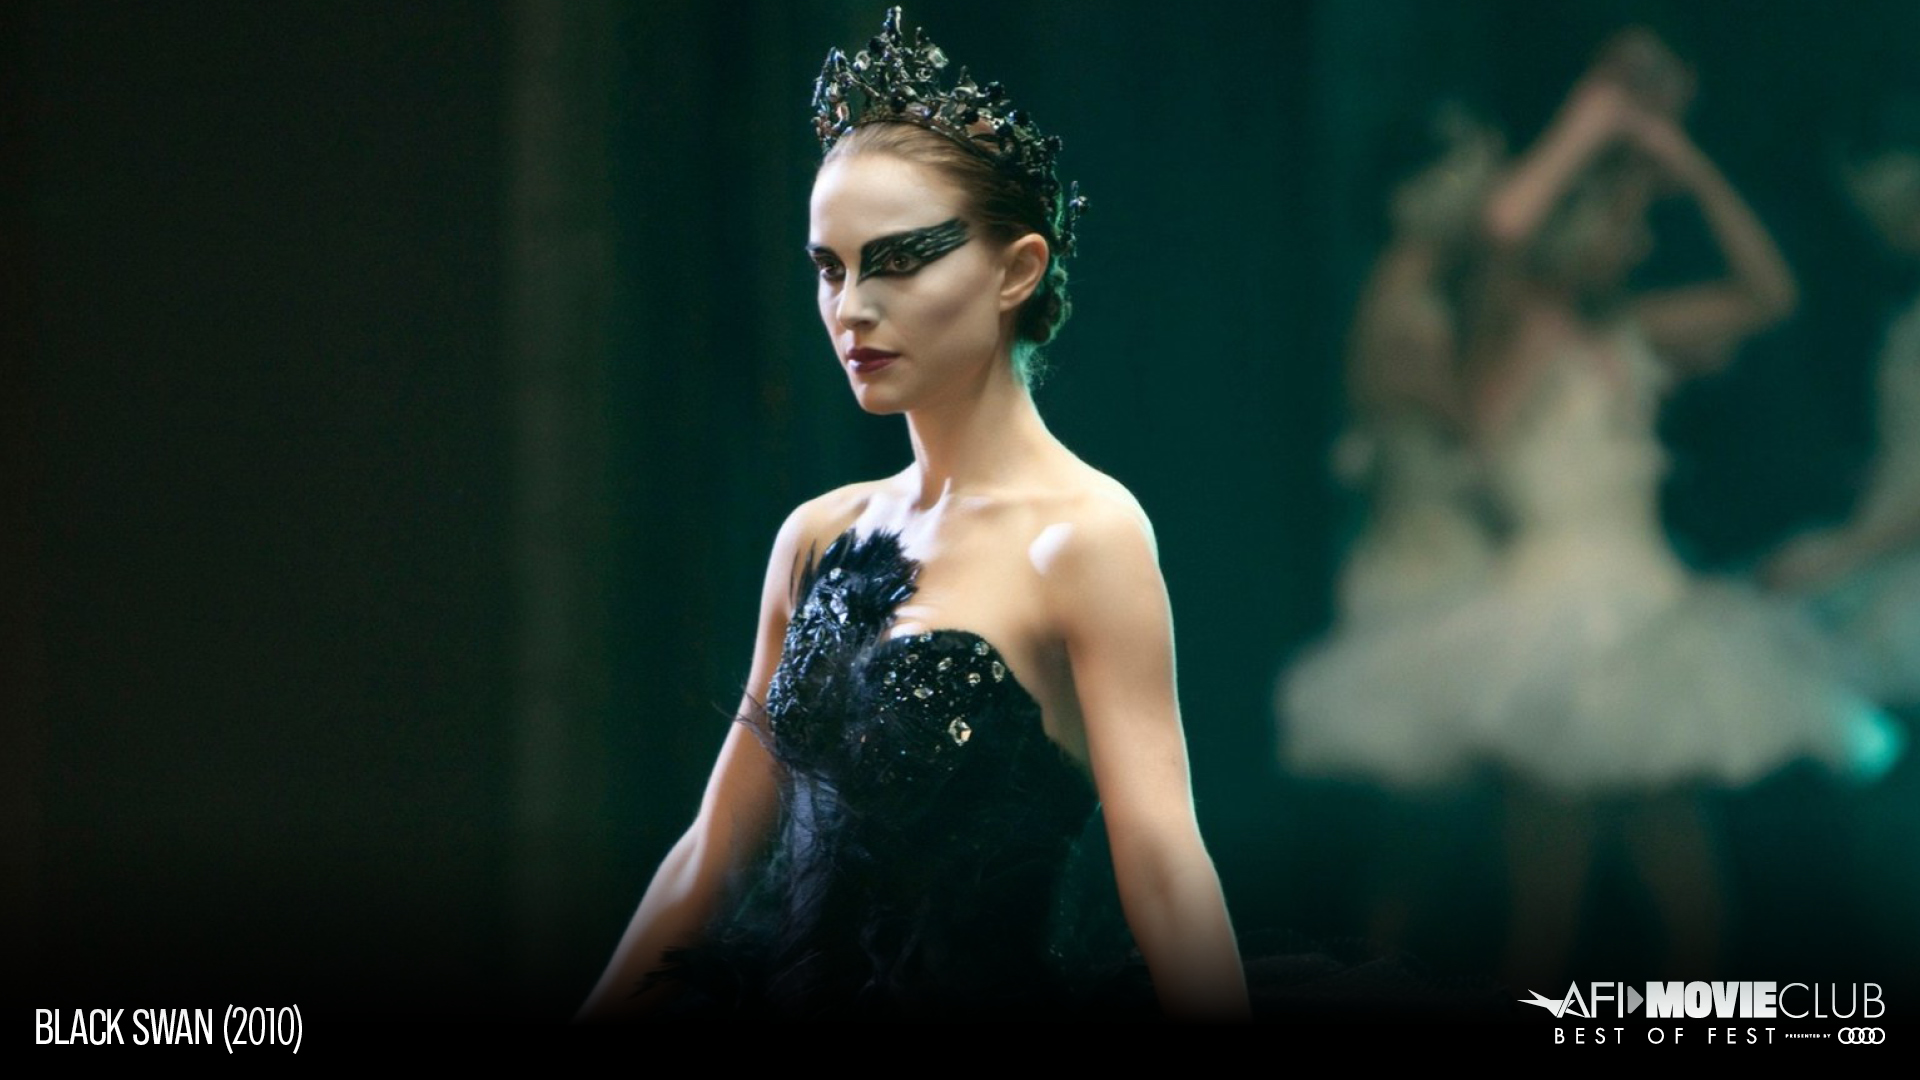 Black Swan Film Still - Natalie Portman